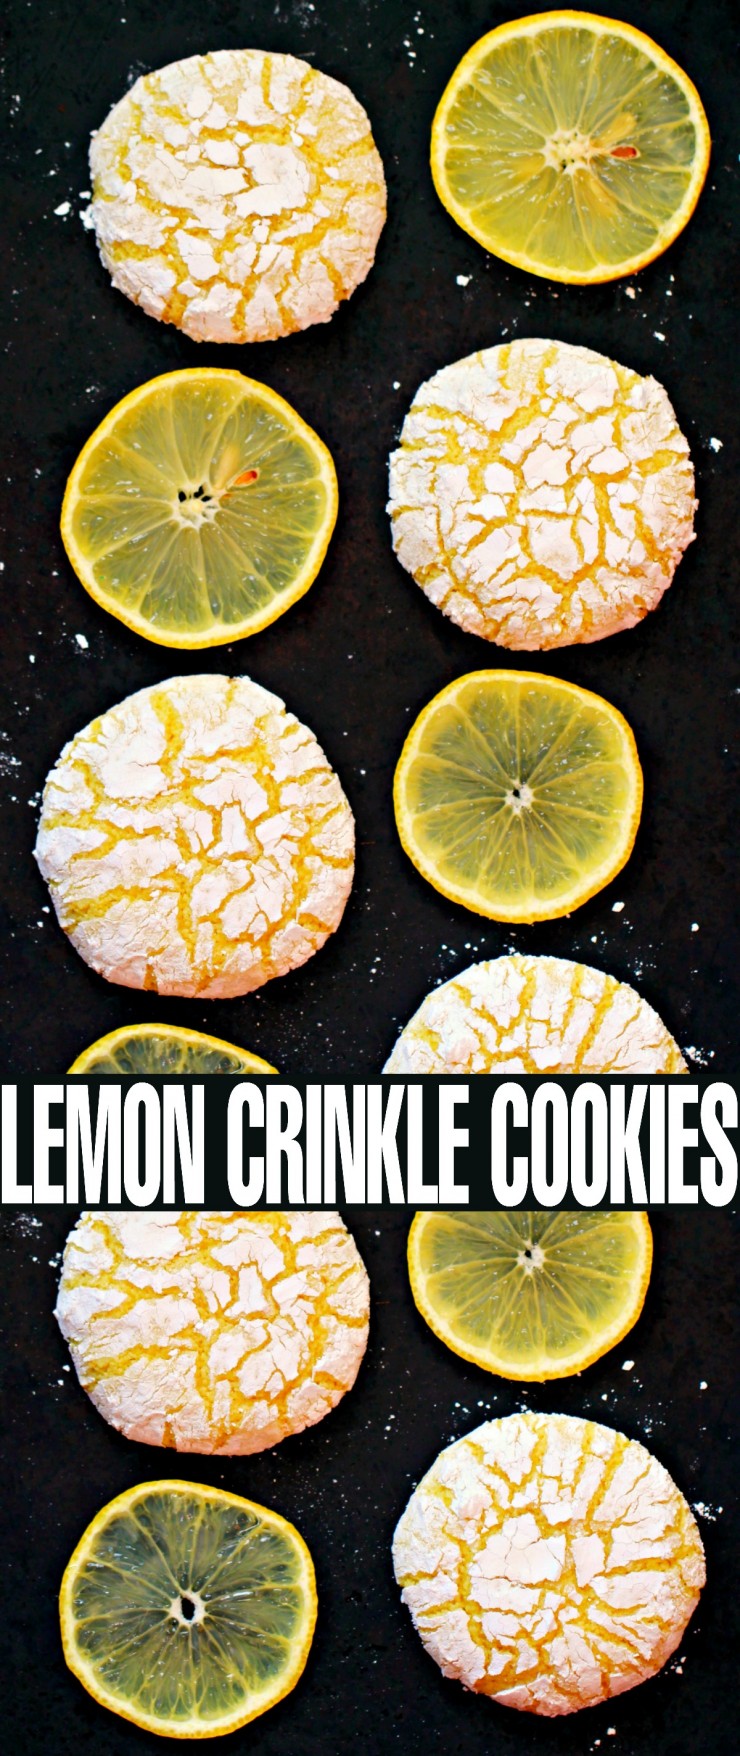 Lemon-Crinkle-Cookies 8e